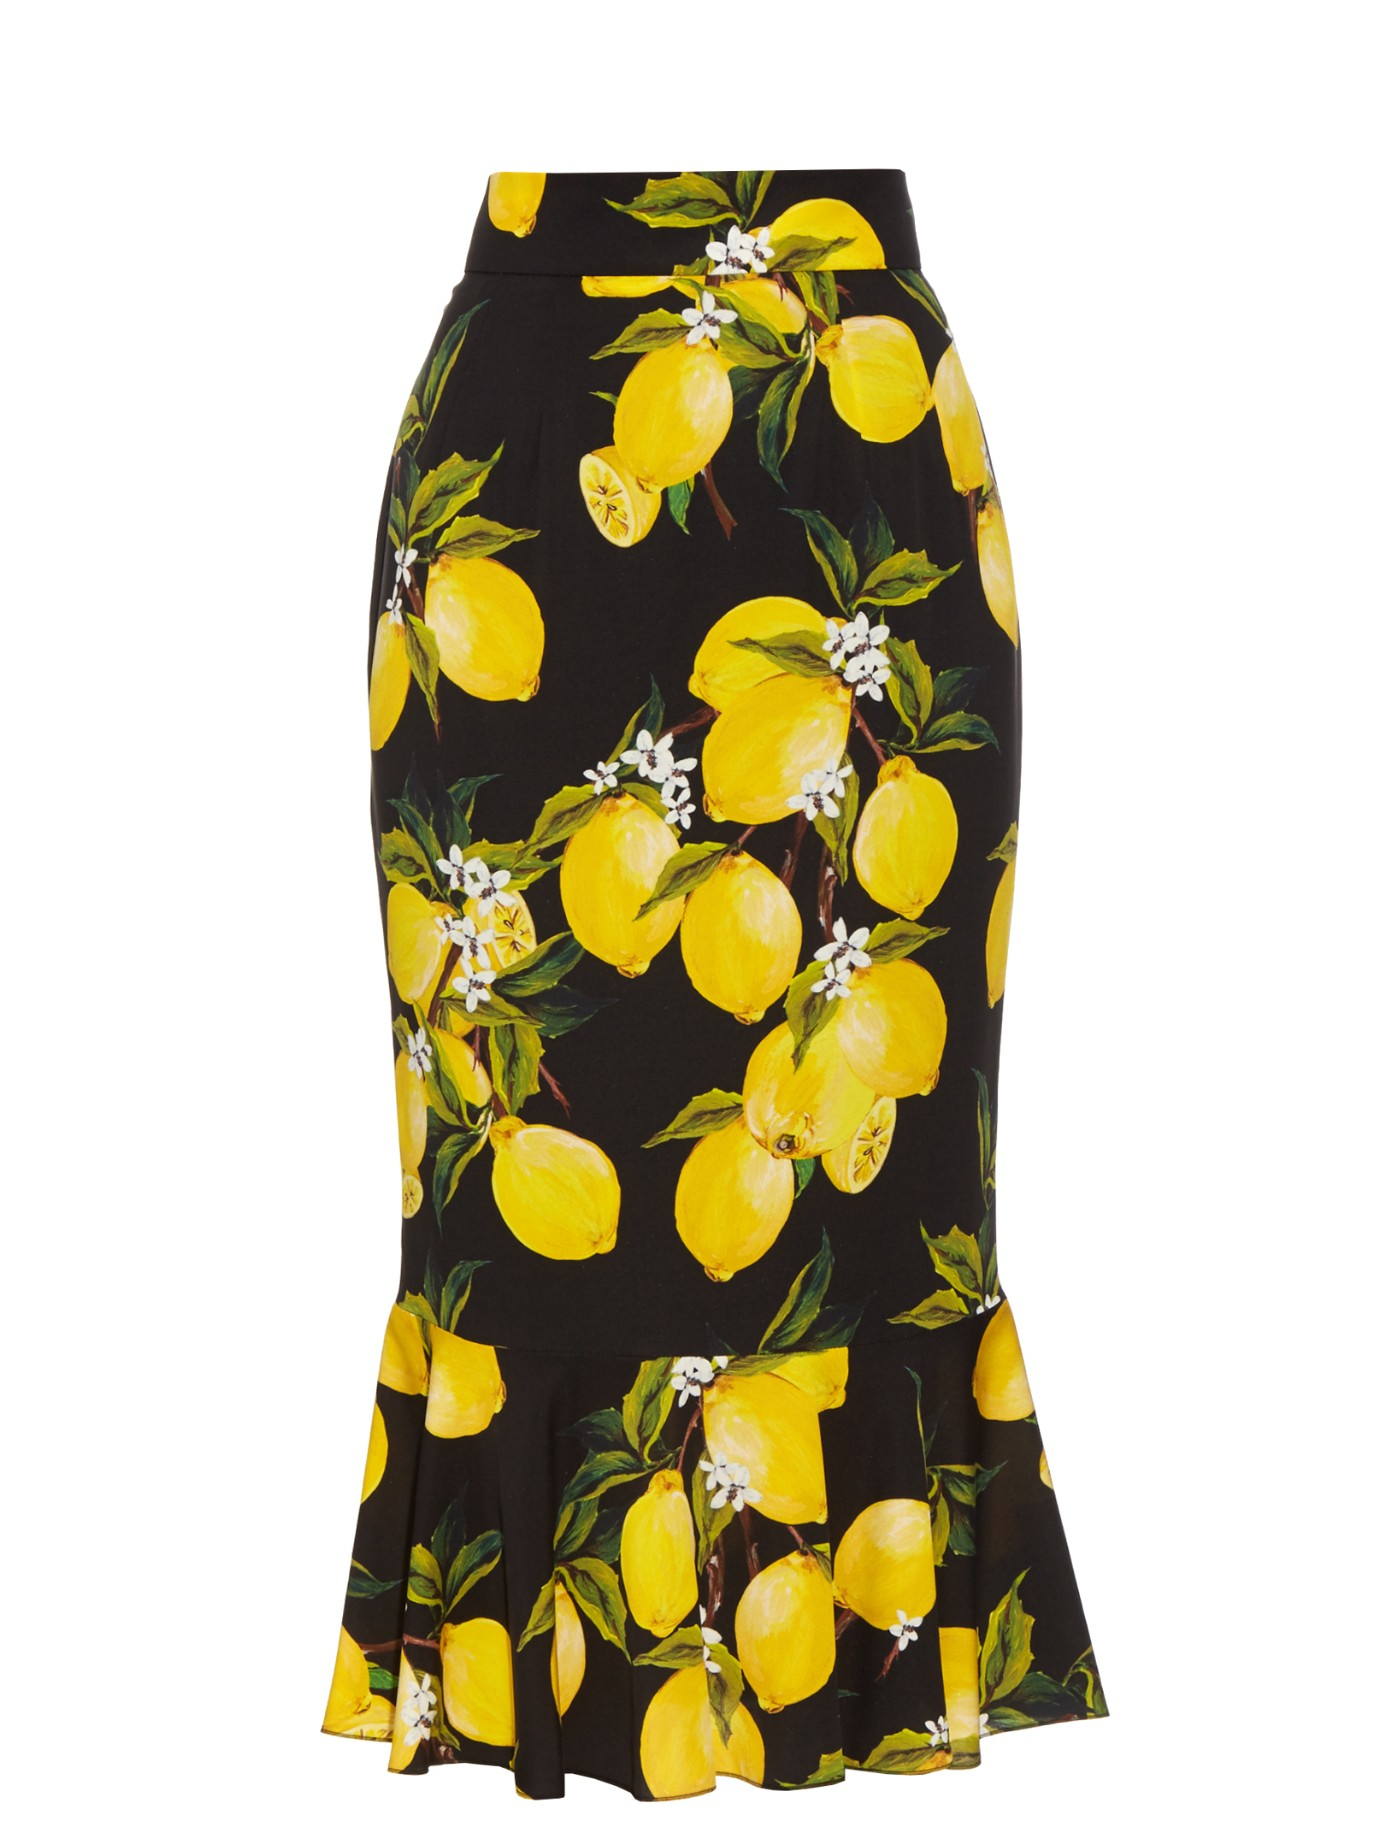 Dolce & gabbana Lemon-print Silk-blend Charmeuse Skirt in Yellow | Lyst